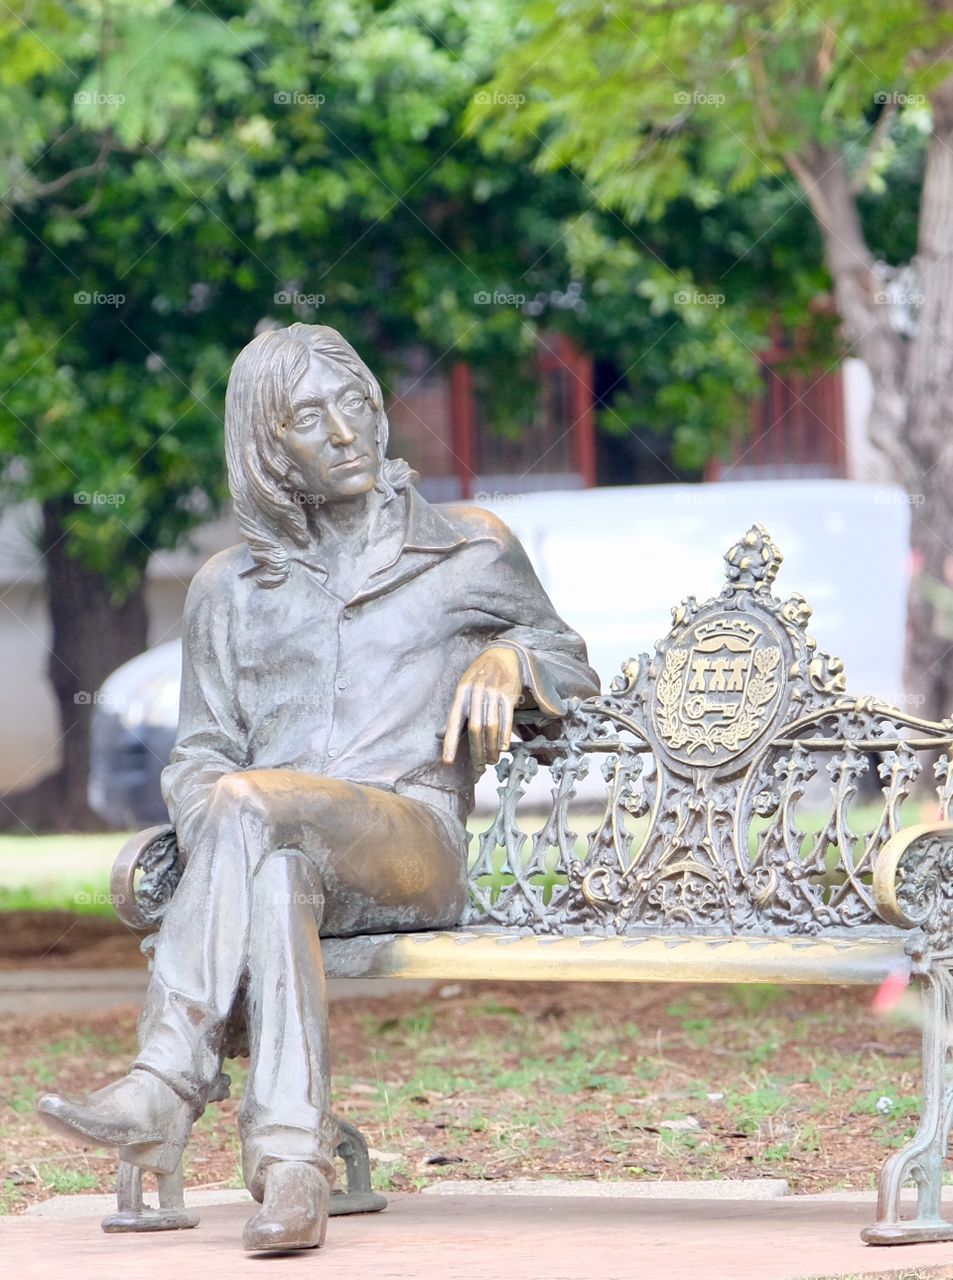 John Lennon statue in Havana, Cuba